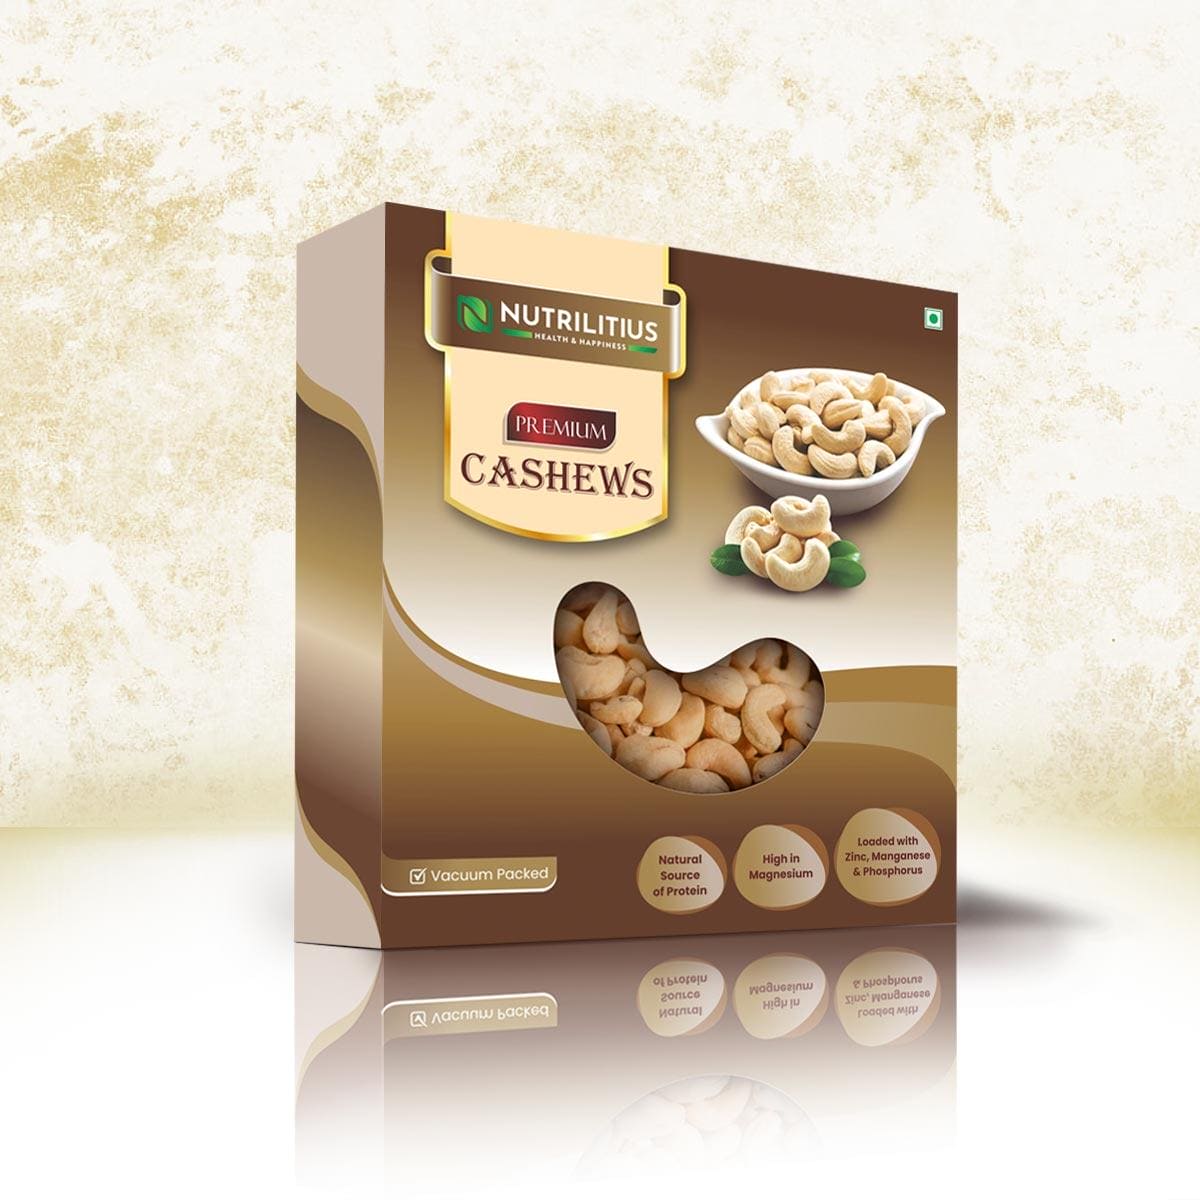 Nutrilitius Premium Cashews - Nutrilitius